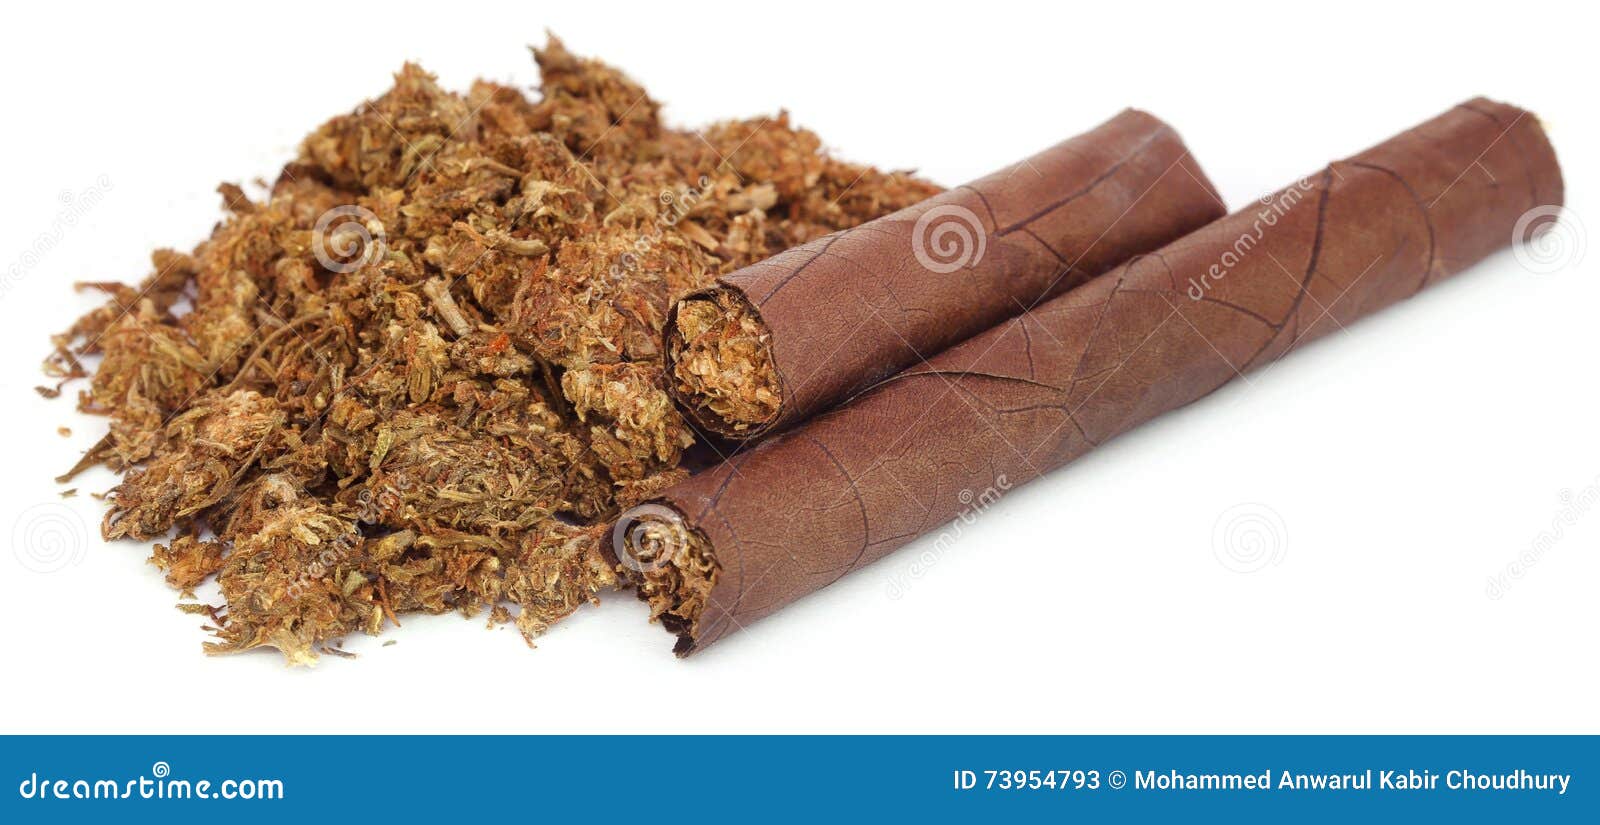 Сигара марихуана обрезка кустов марихуаны